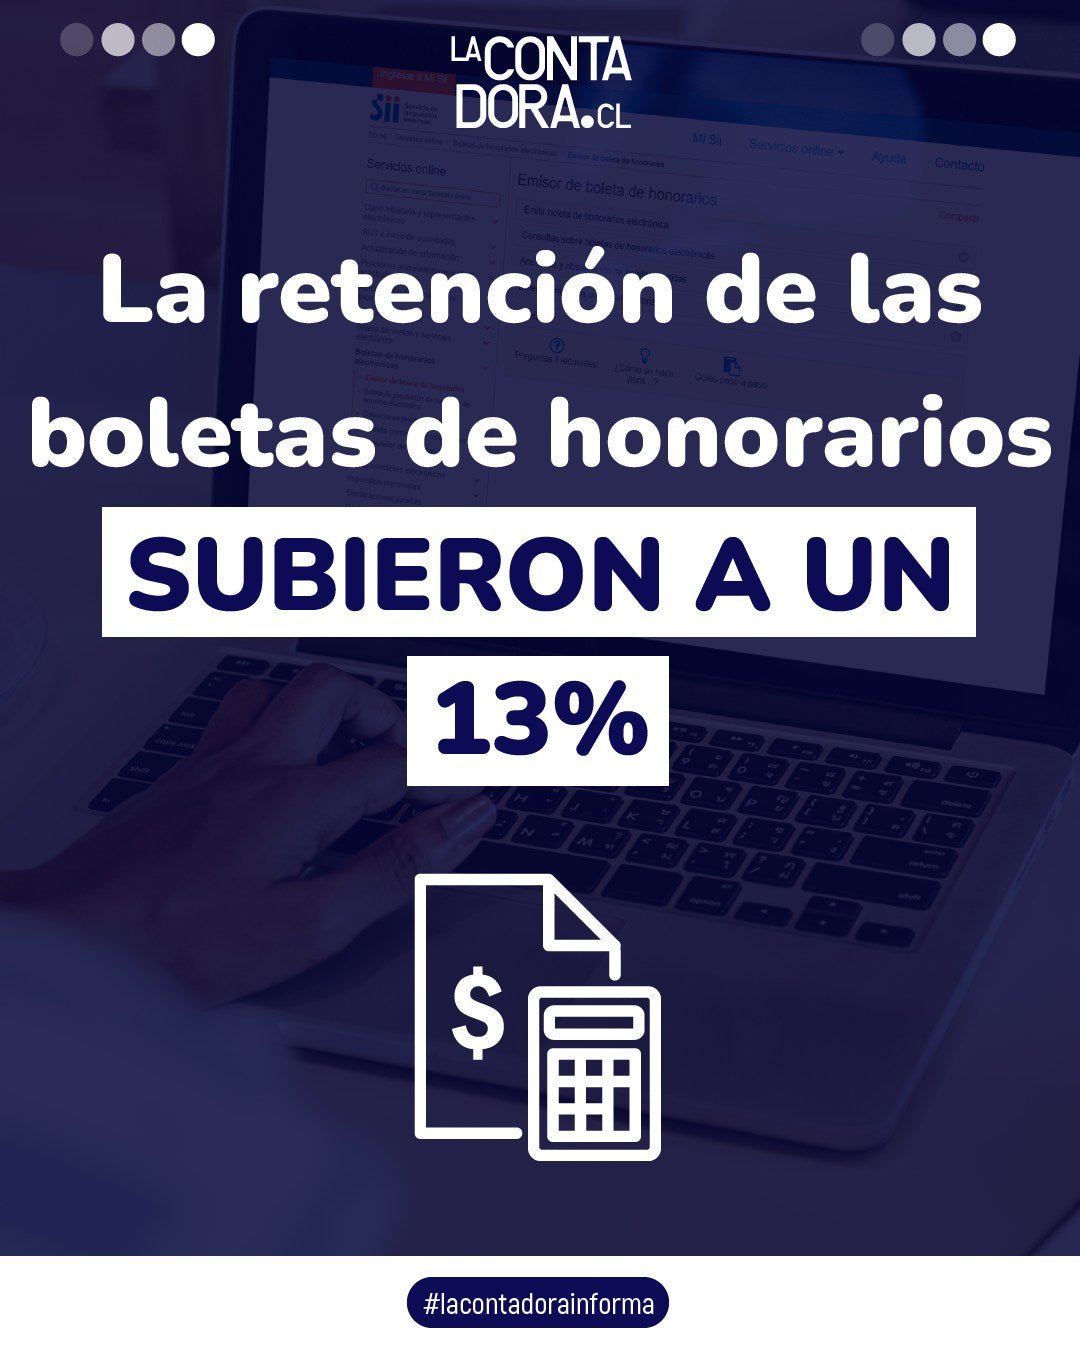 LA RETENCIÓN DE LAS BOLETAS DE HONORARIOS SUBIERON A UN 13%